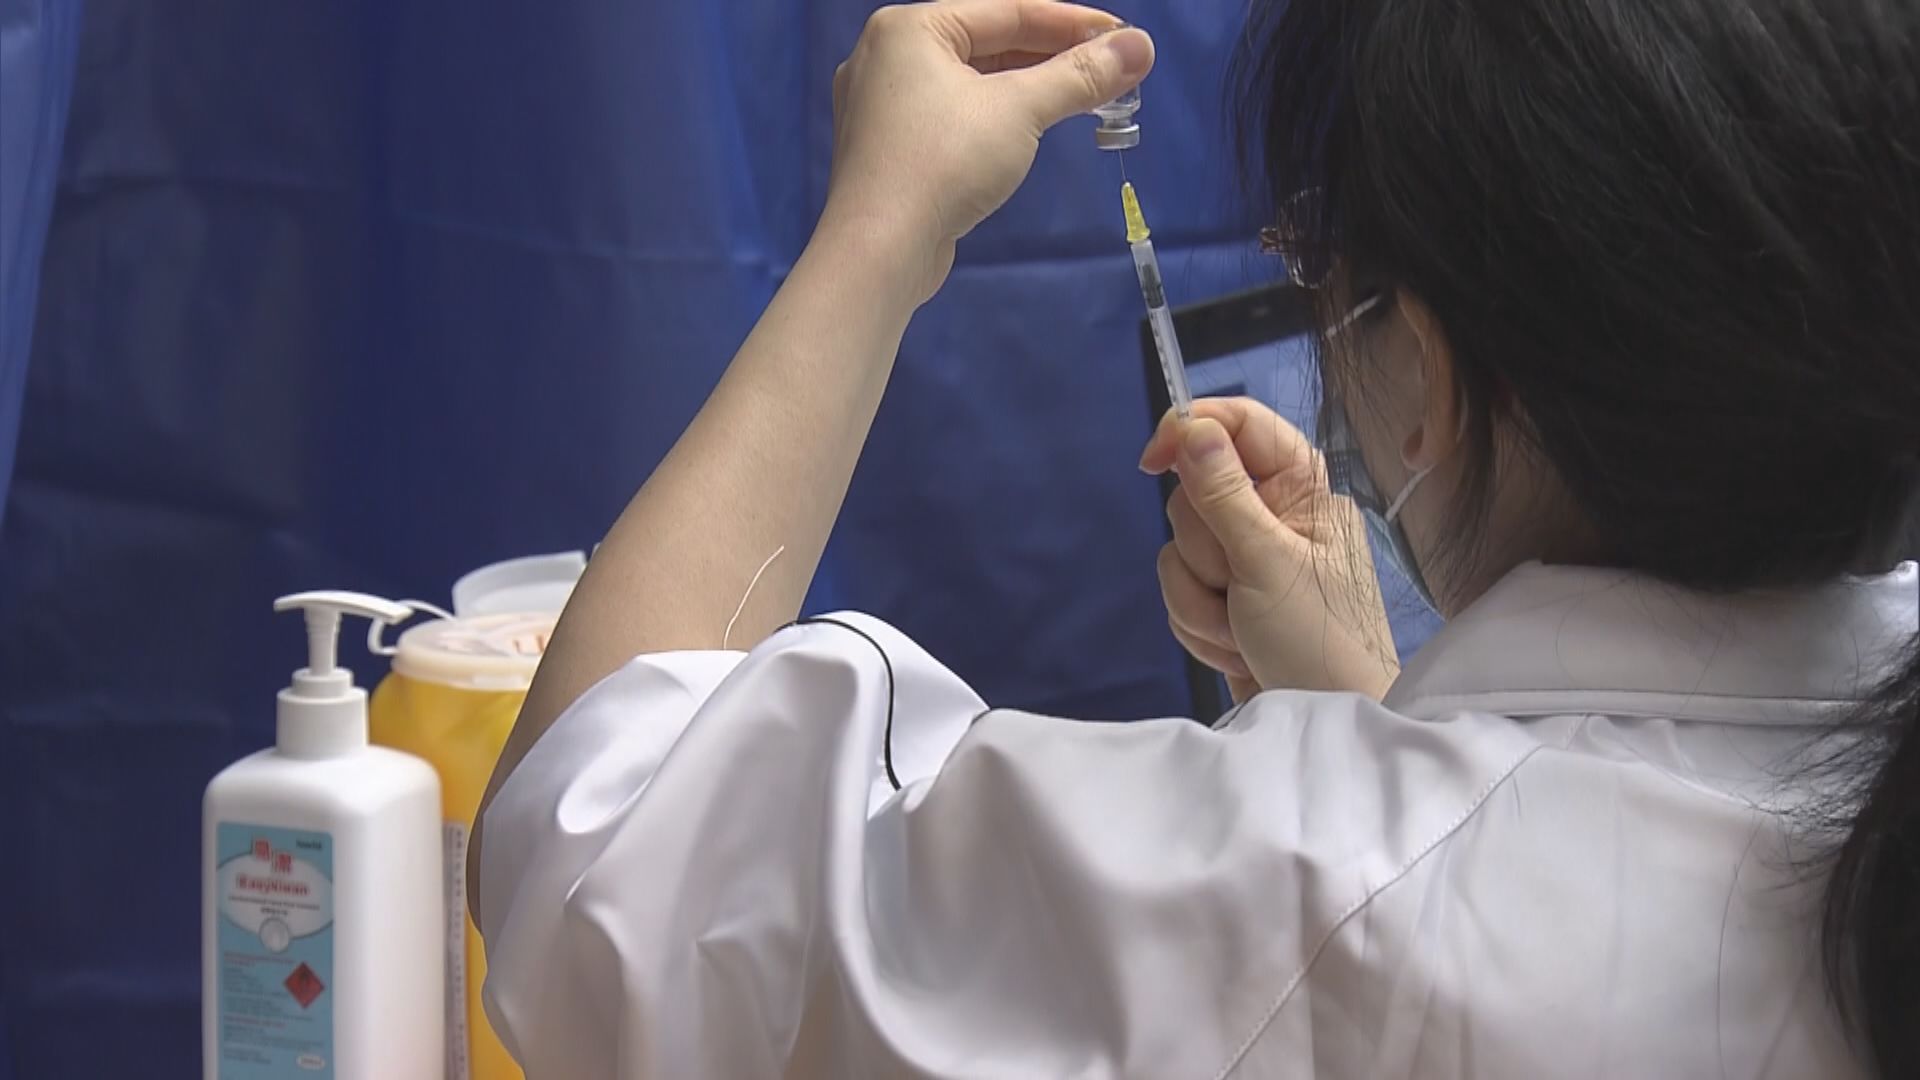 醫管局周四起為覆診病人提供接種流感及新冠疫苗